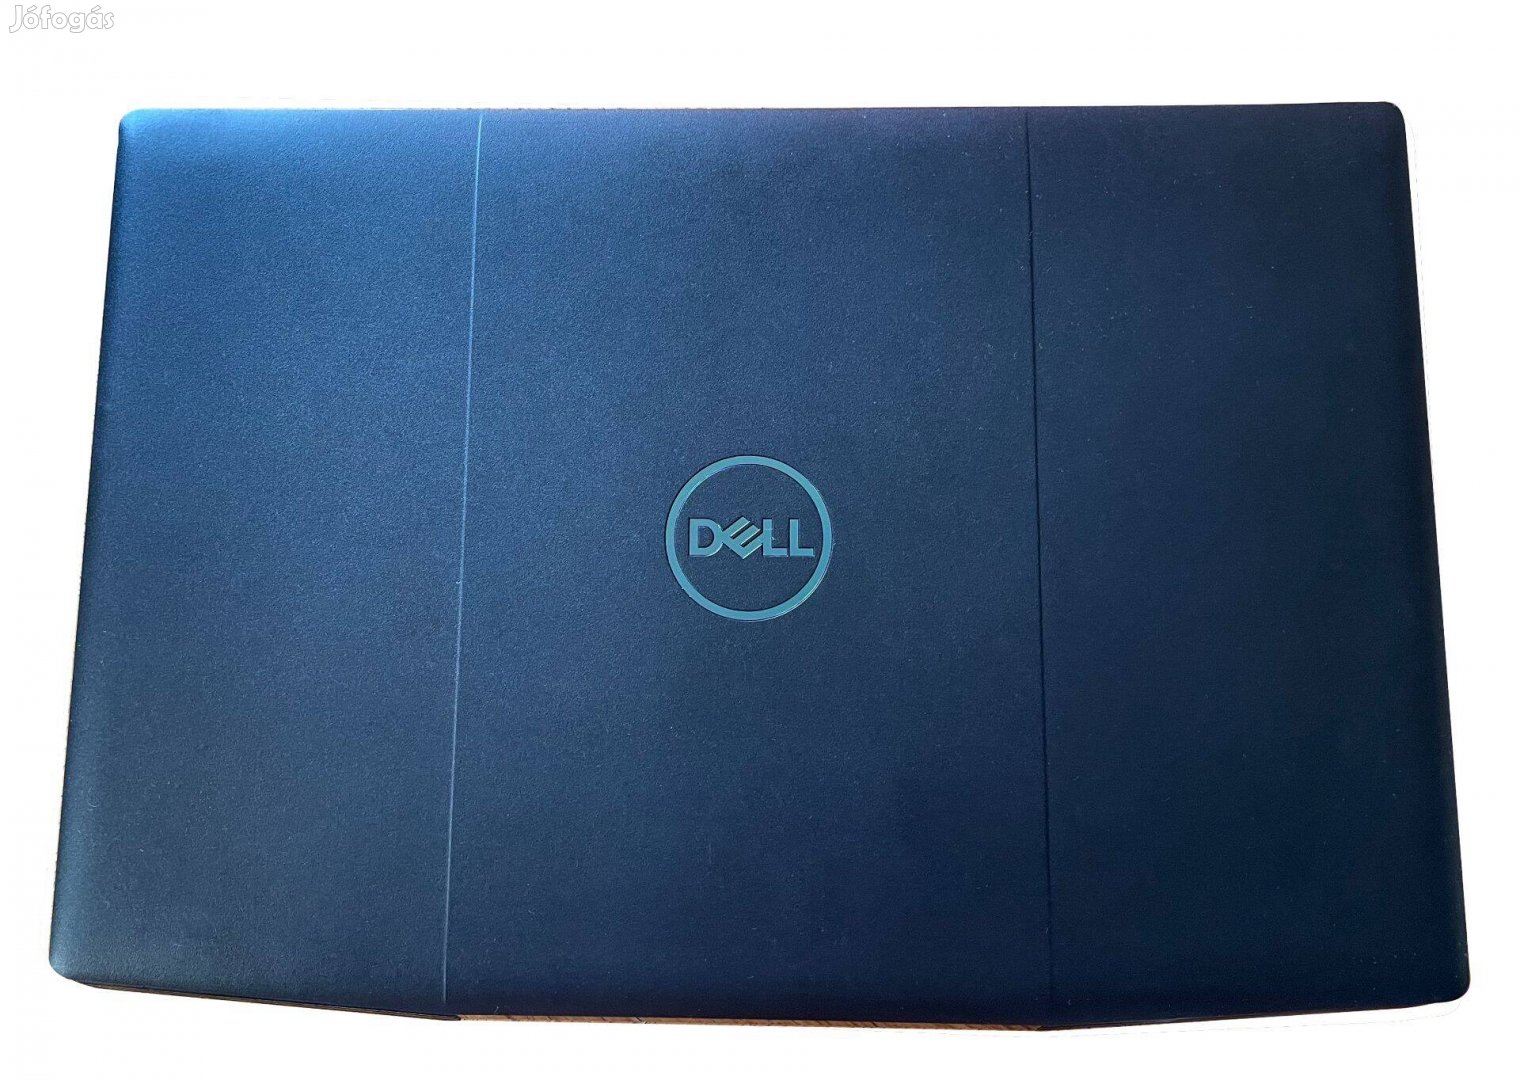 Dell G3 3500 gamer laptop, még garanciális, karcmentes, új állapotú,